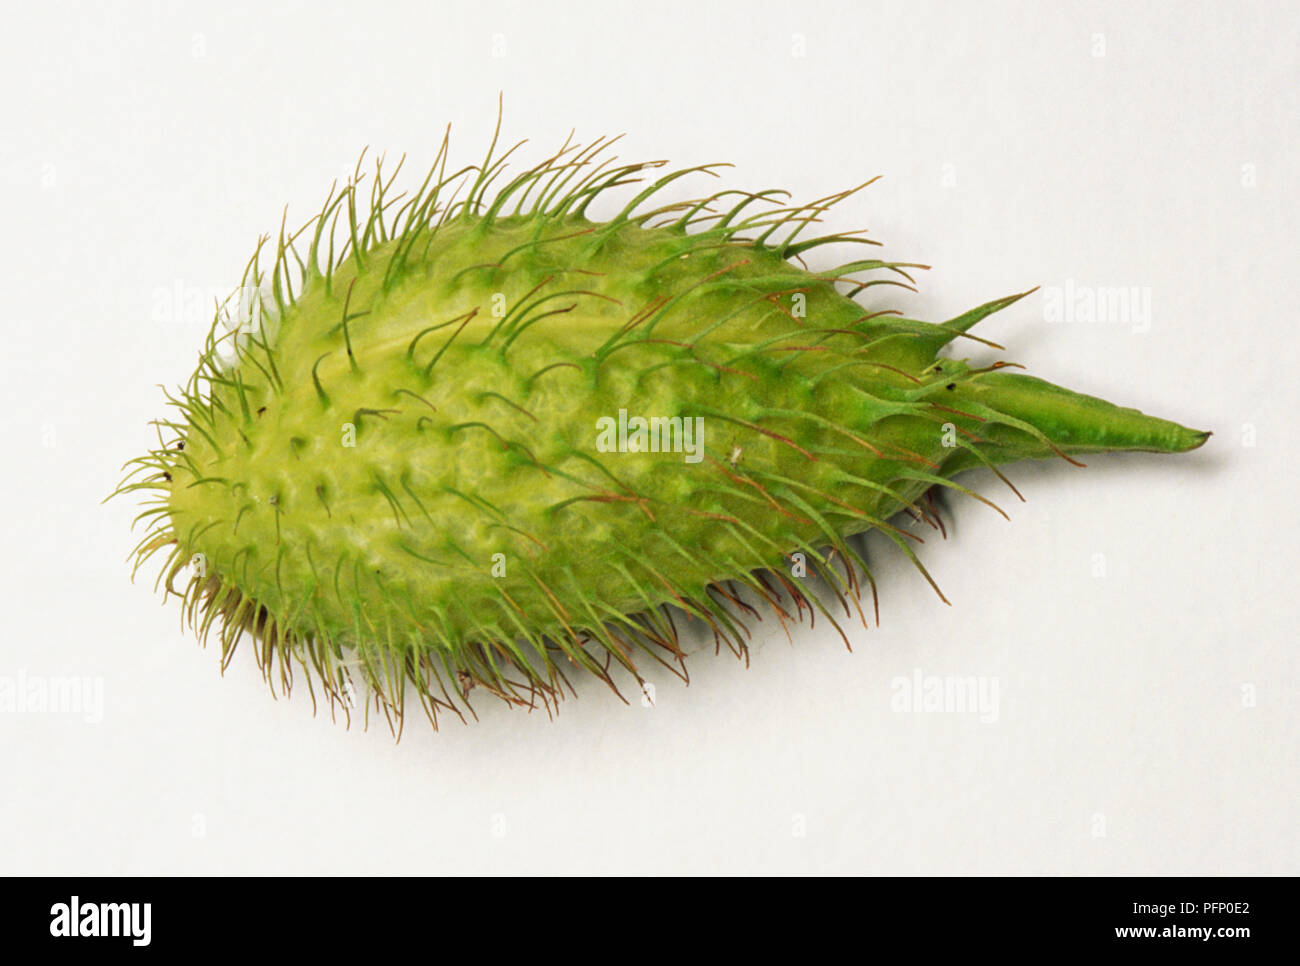 Gomphocarpus fruticosus, fruit of bristly-fruited silkweed, green bulb-like with bristly hairs. Stock Photo